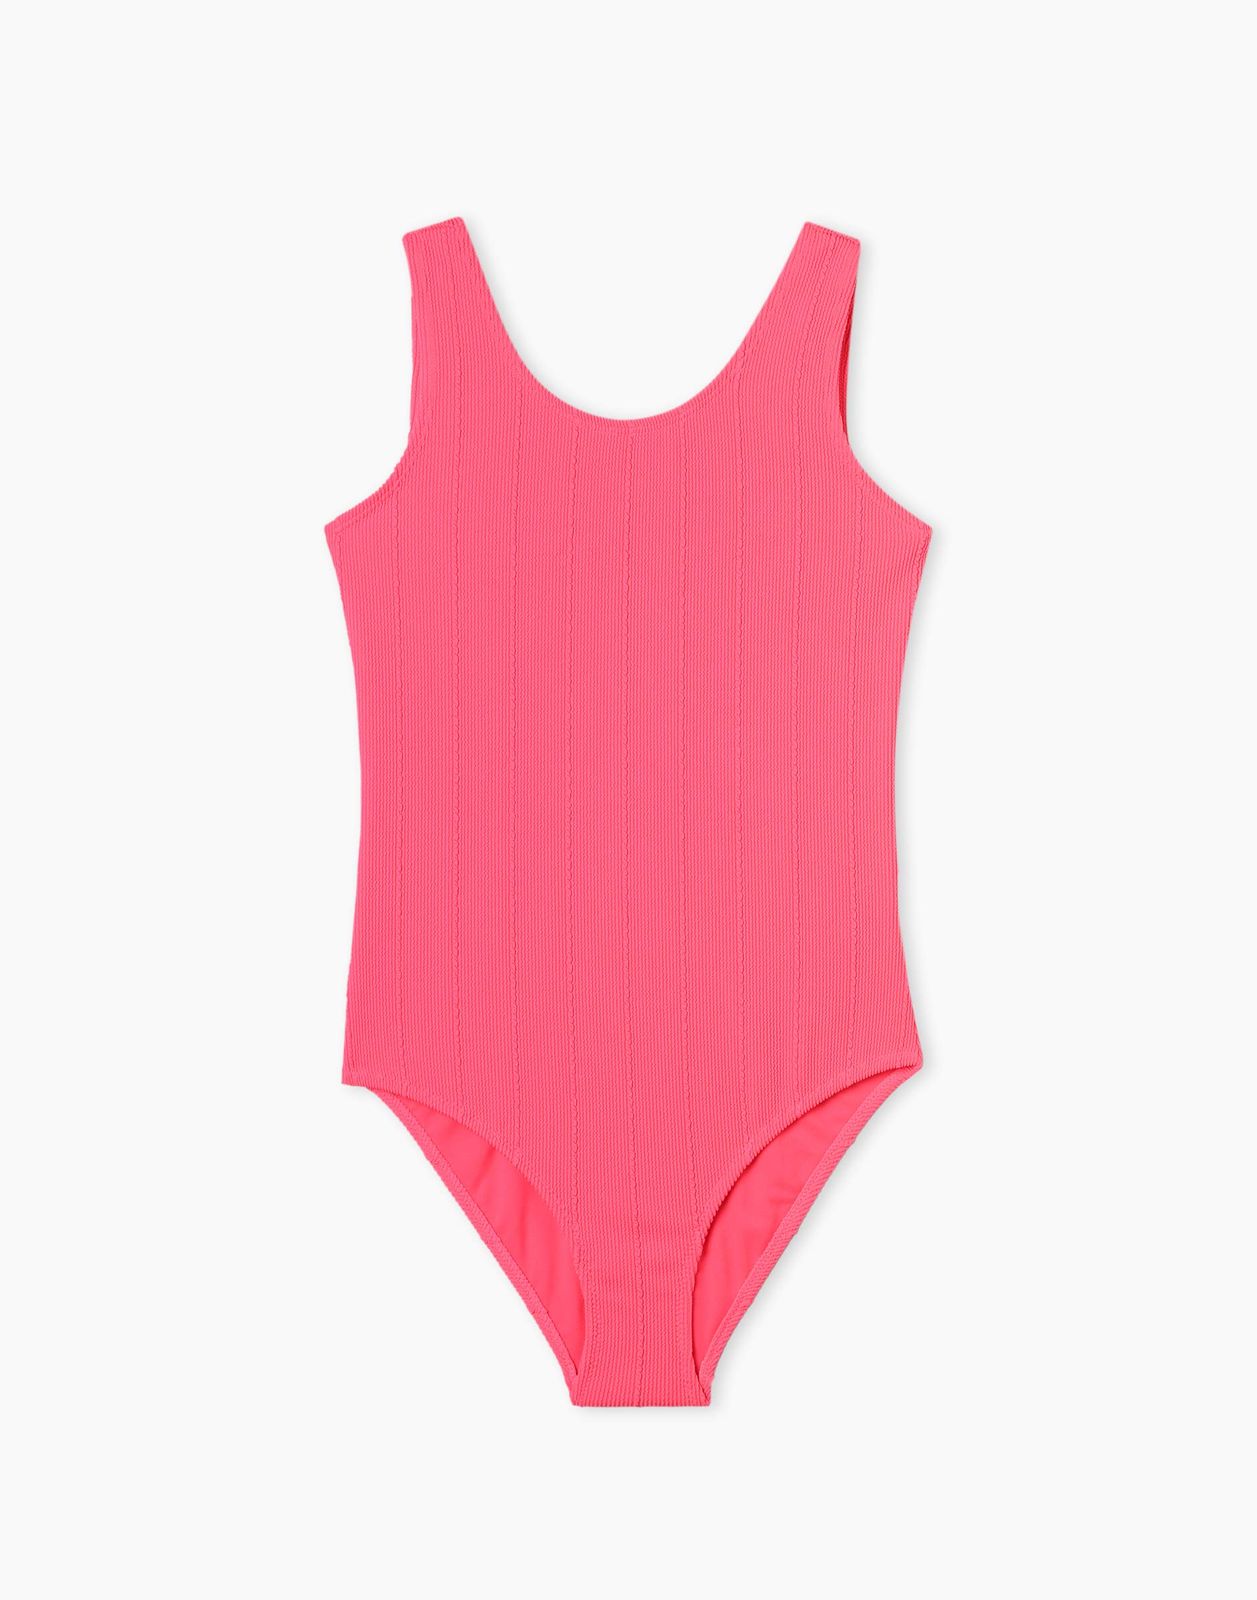 Слитный купальник для девочки Gloria Jeans GSM001671 ярко-розовый 6-8л/128